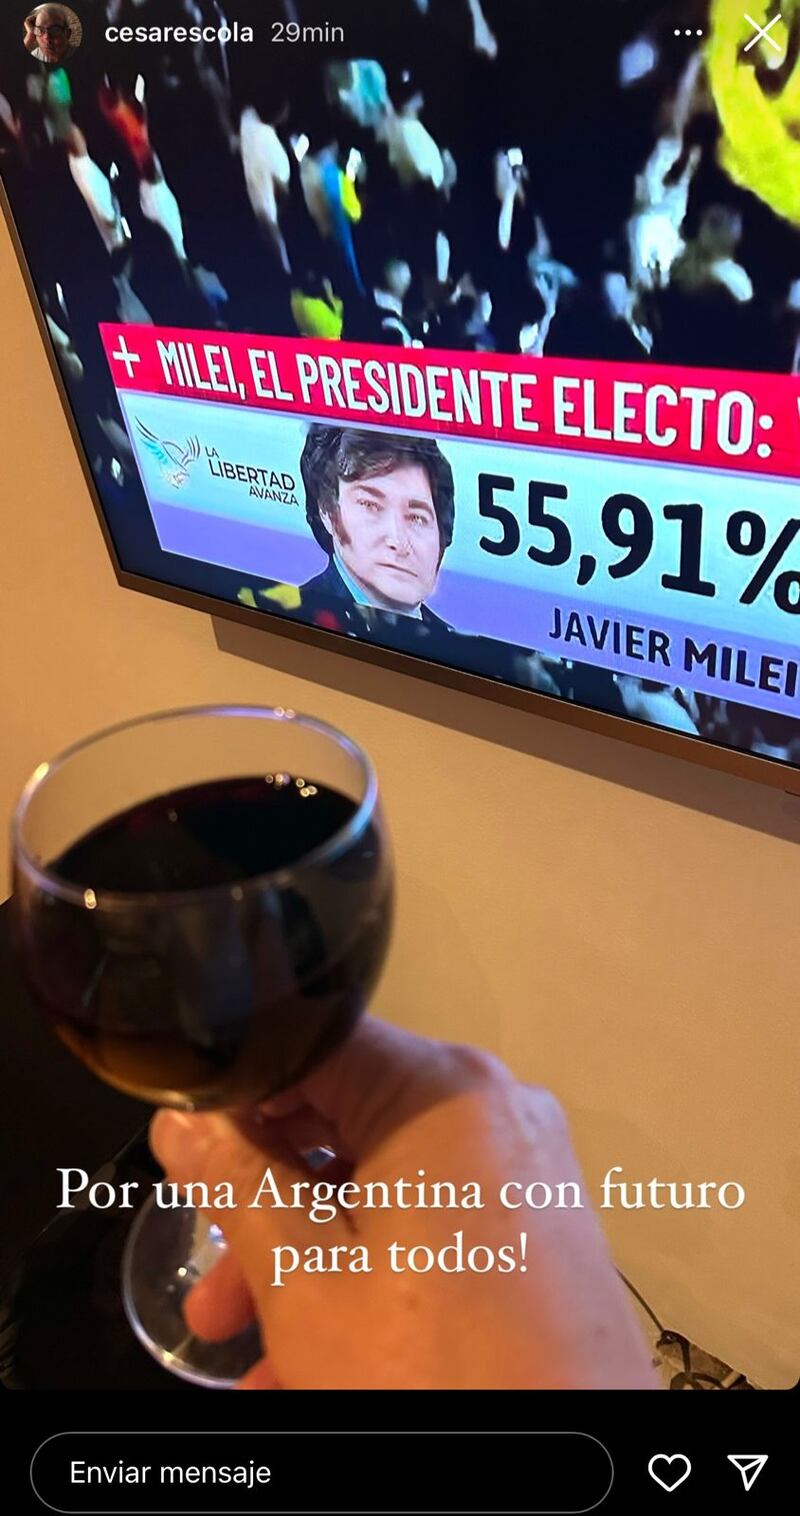 César Escola de Yo me llamo celebró el triunfo de Javier Milei como nuevo presidente de Argentina